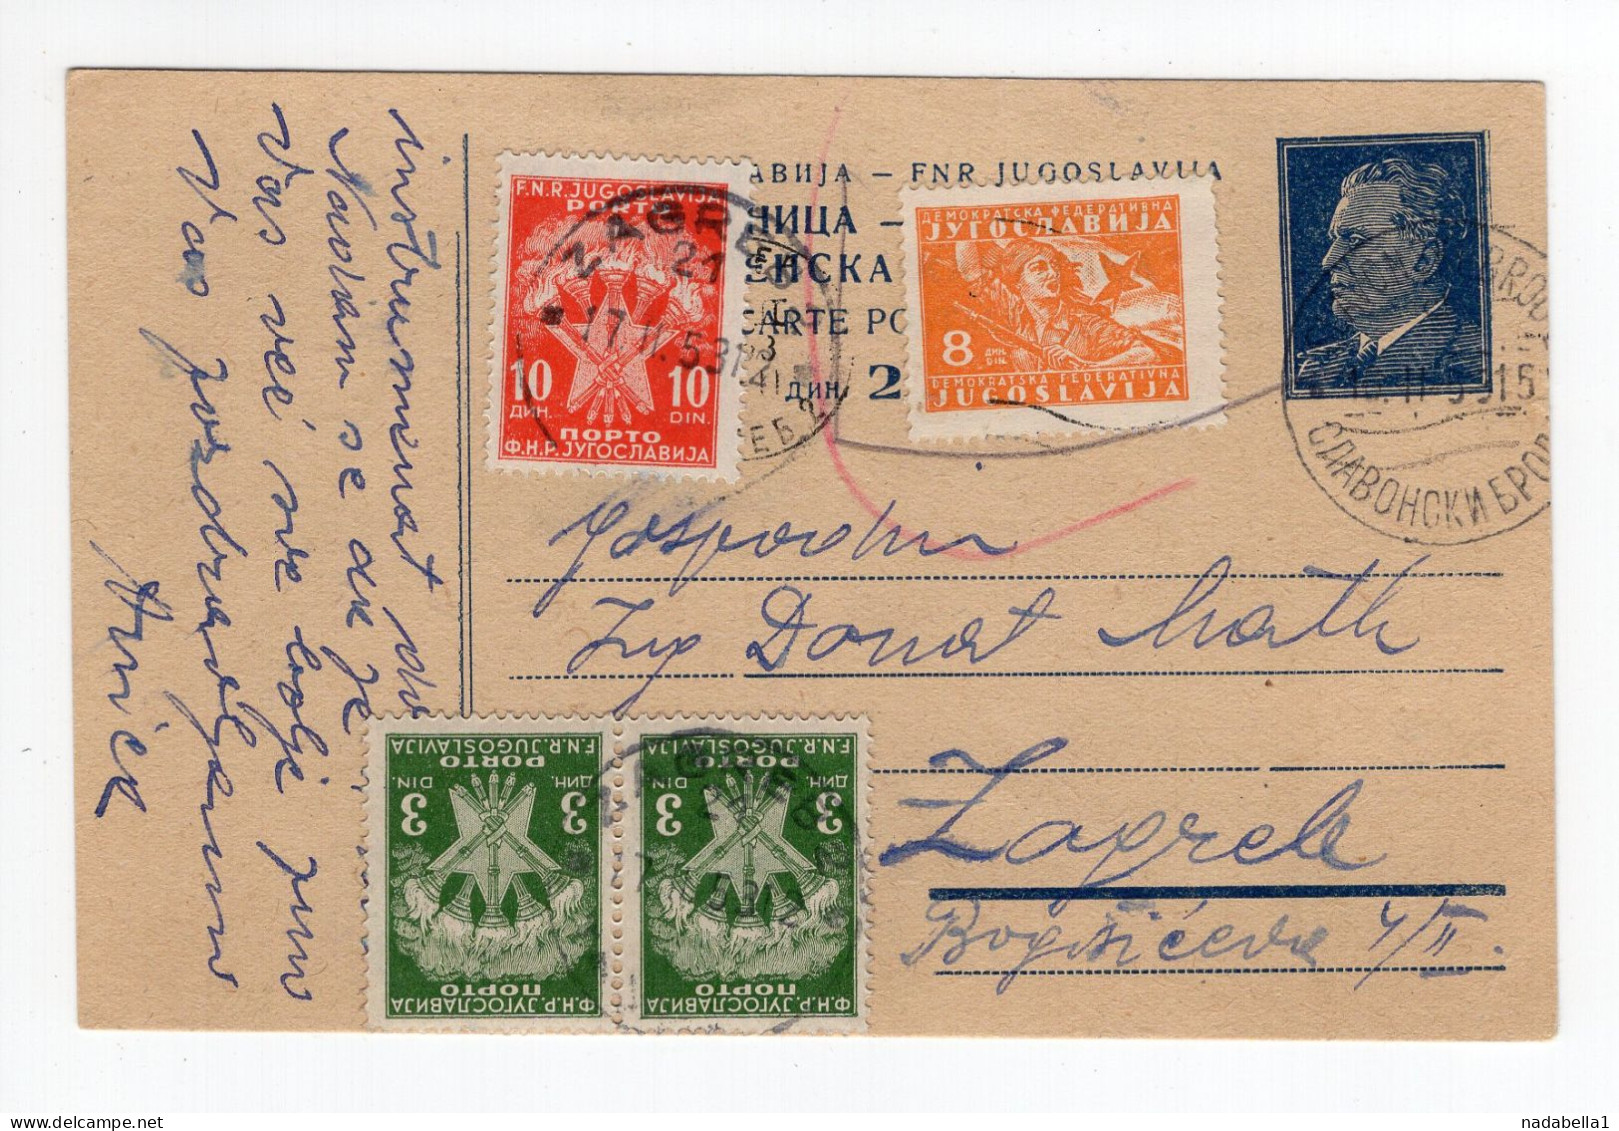 1953. YUGOSLAVIA,CROATIA,SLAVONSKI BROD,STATIONERY CARD,USED,POSTAGE DUE IN ZAGREB - Timbres-taxe